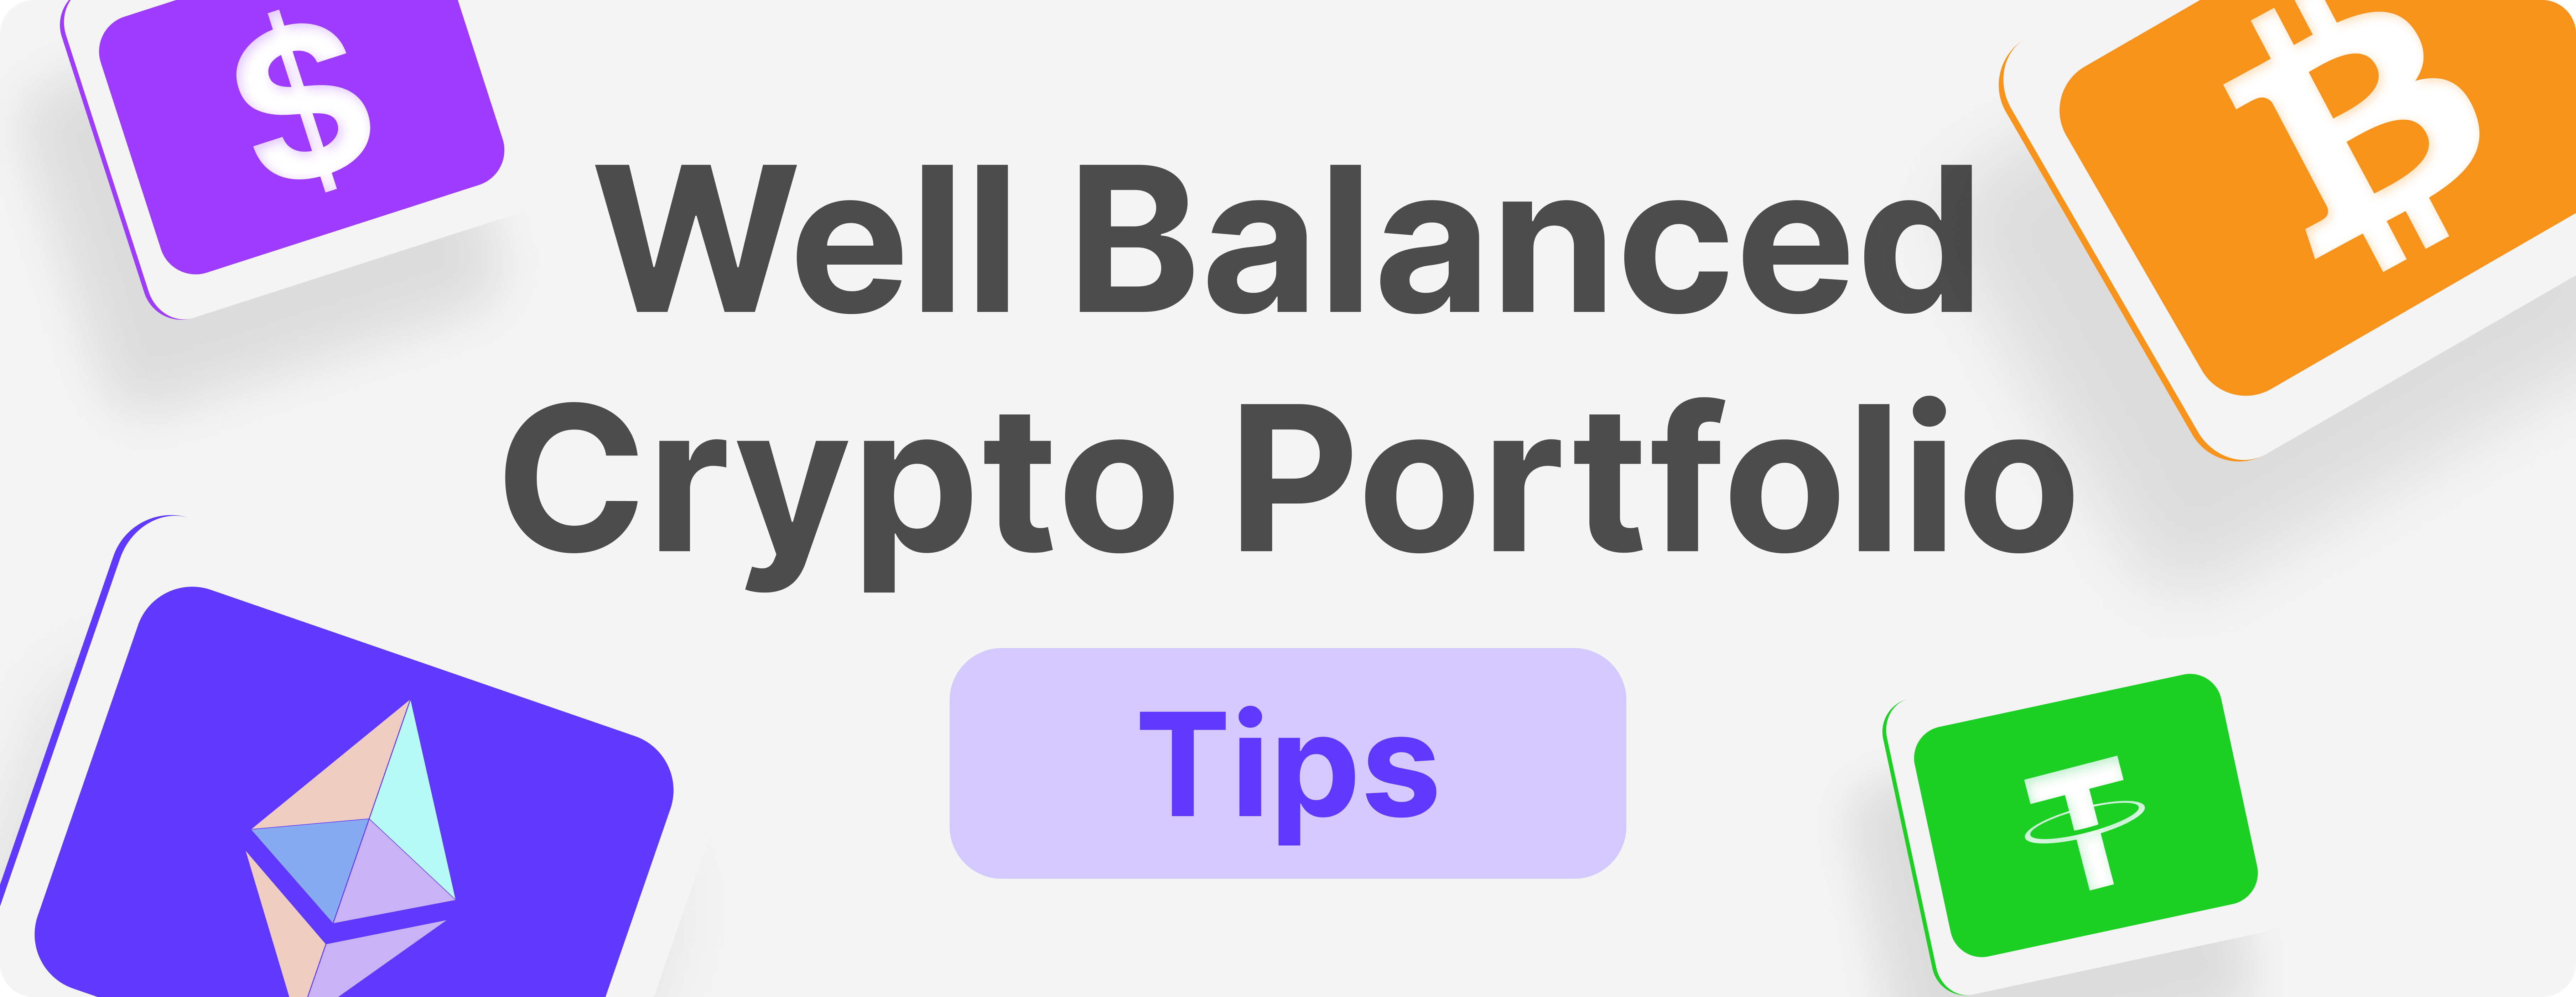 How to Create a Well-Balanced Crypto Portfolio?